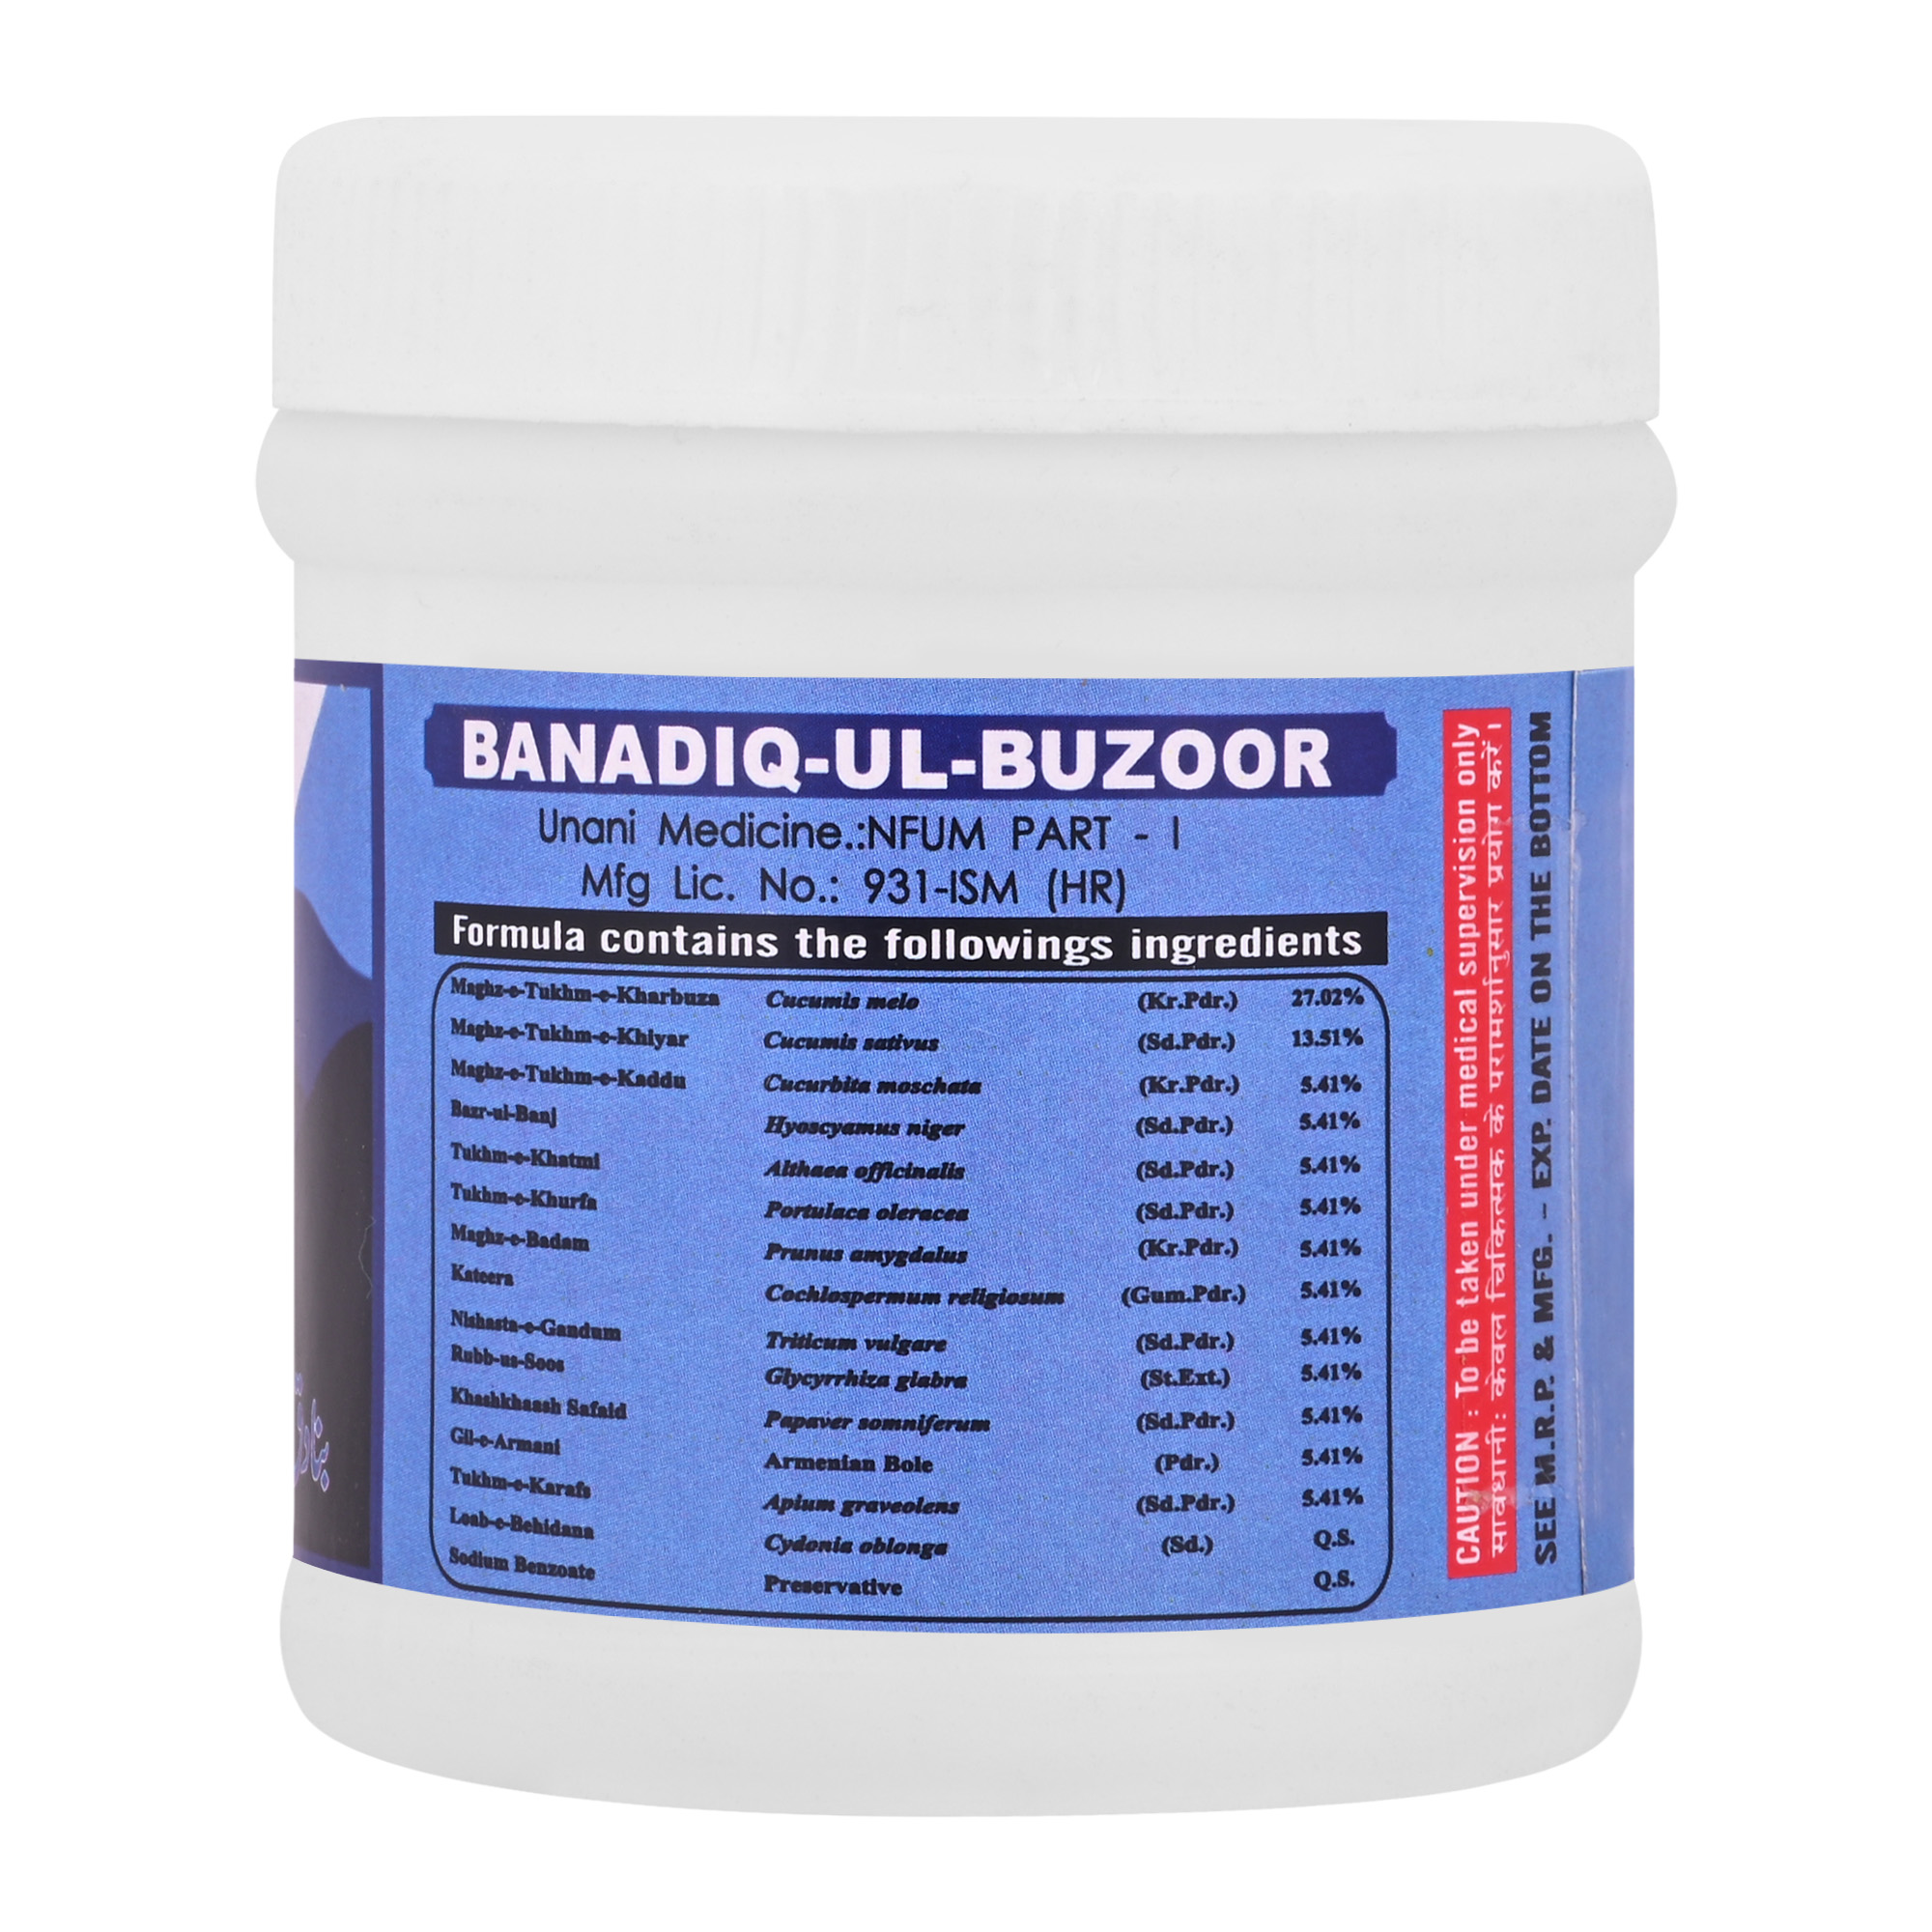 Buy Cipzer Banadiq-Ul-Buzoor at Best Price Online